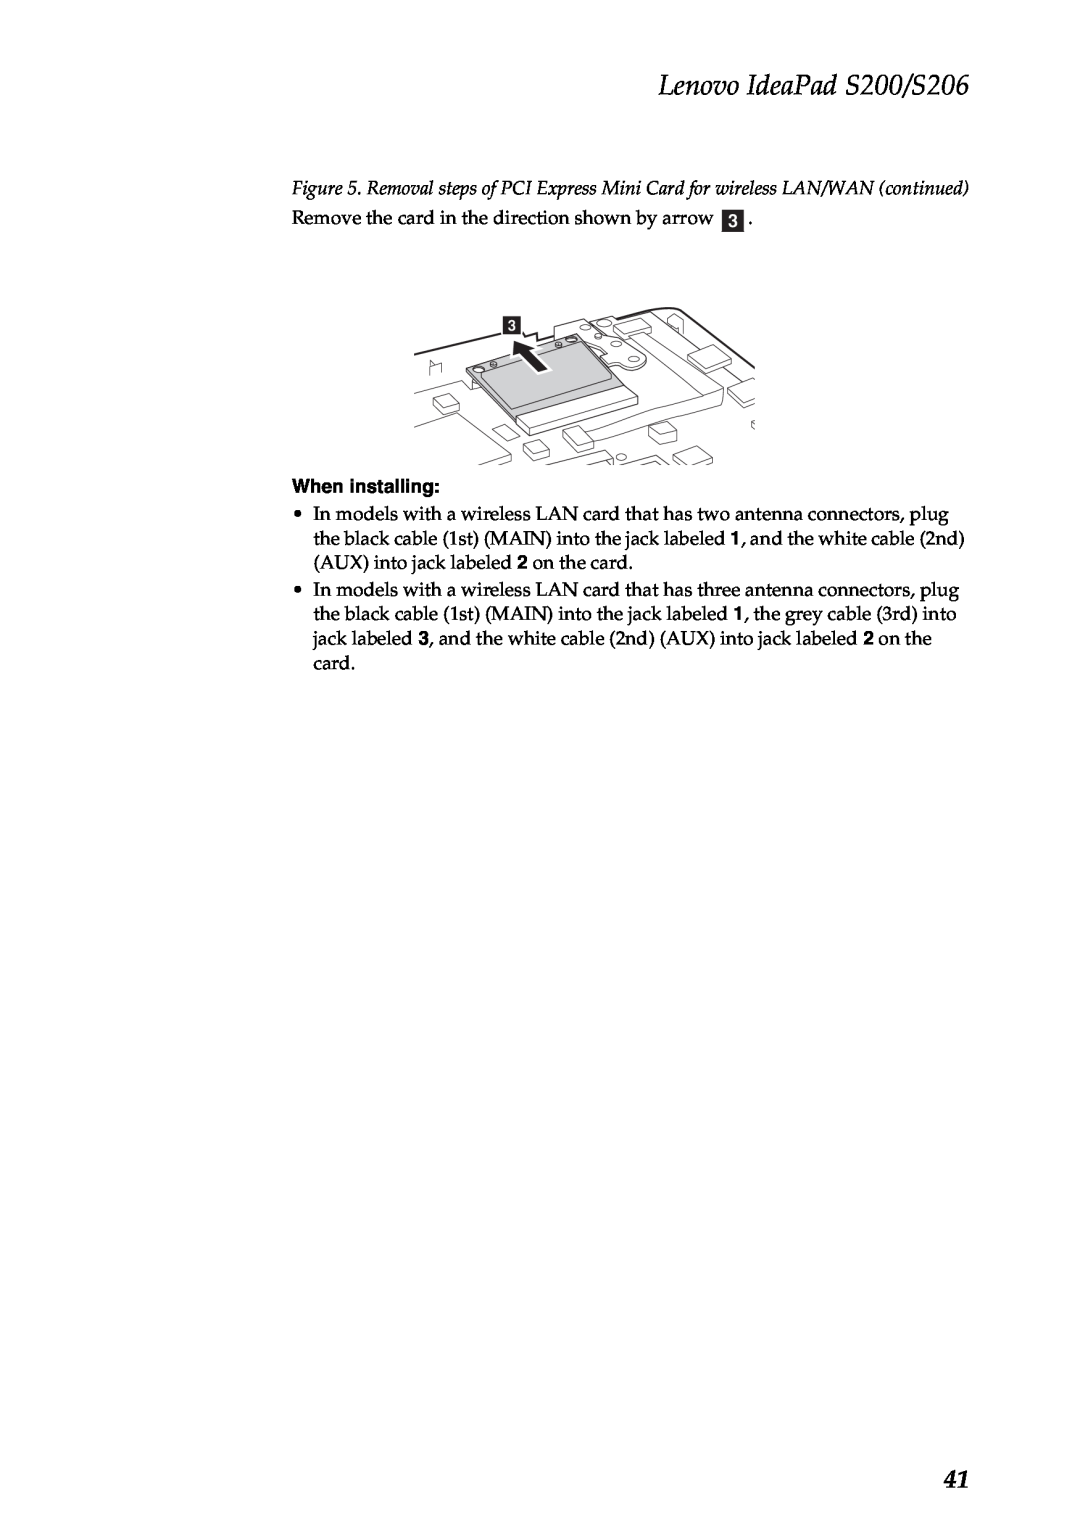 Lenovo manual Lenovo IdeaPad S200/S206, When installing 